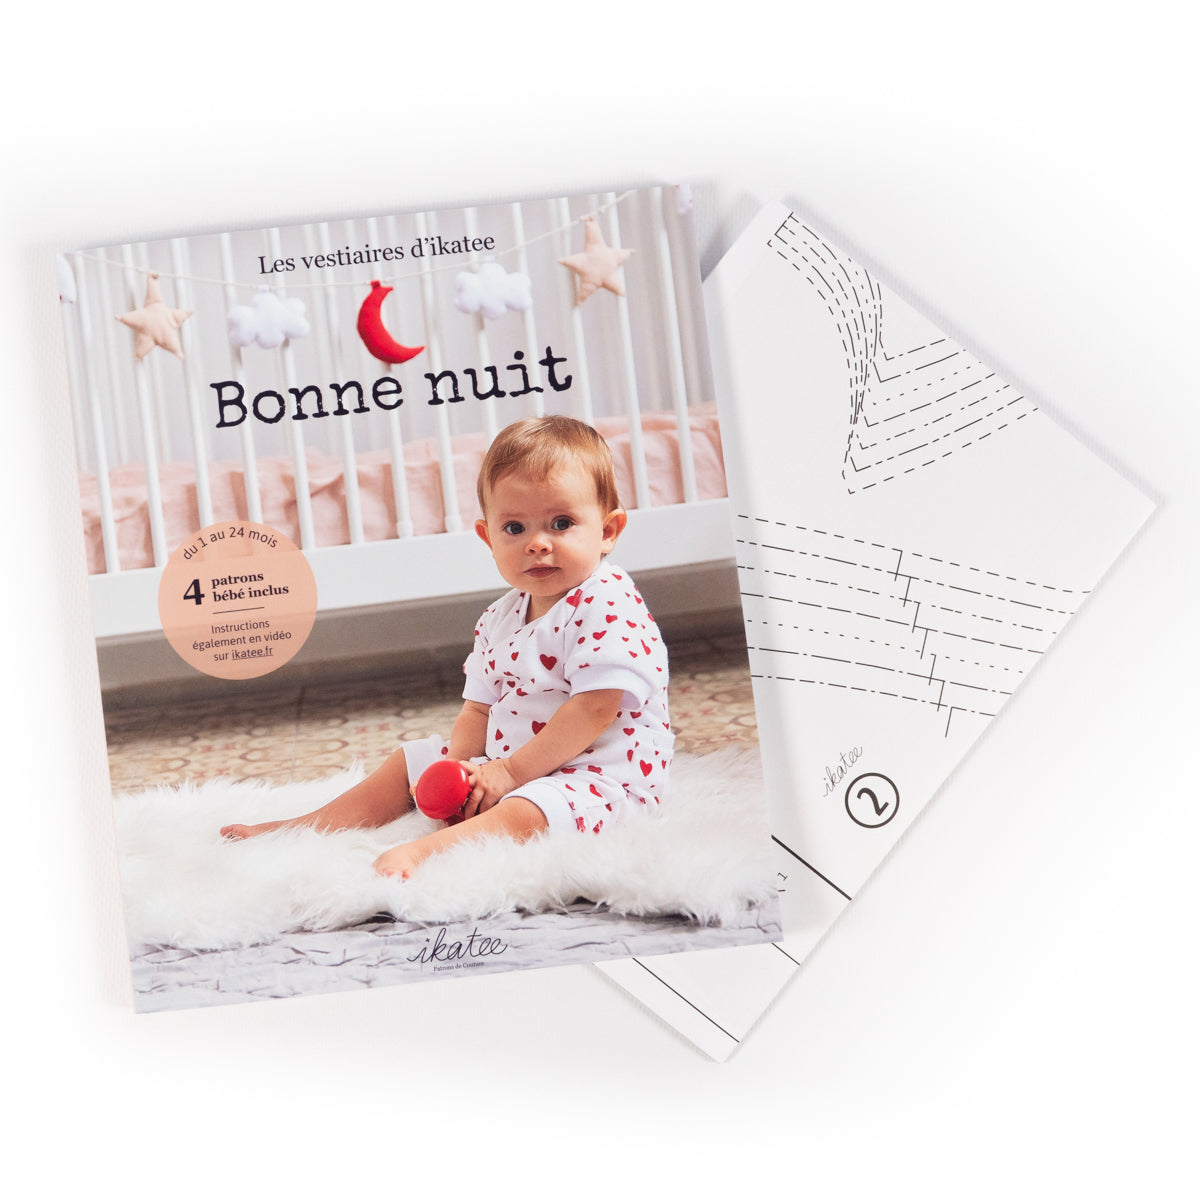 100 idées cadeaux pour les enfants (3 ans et plus) - The Brunette